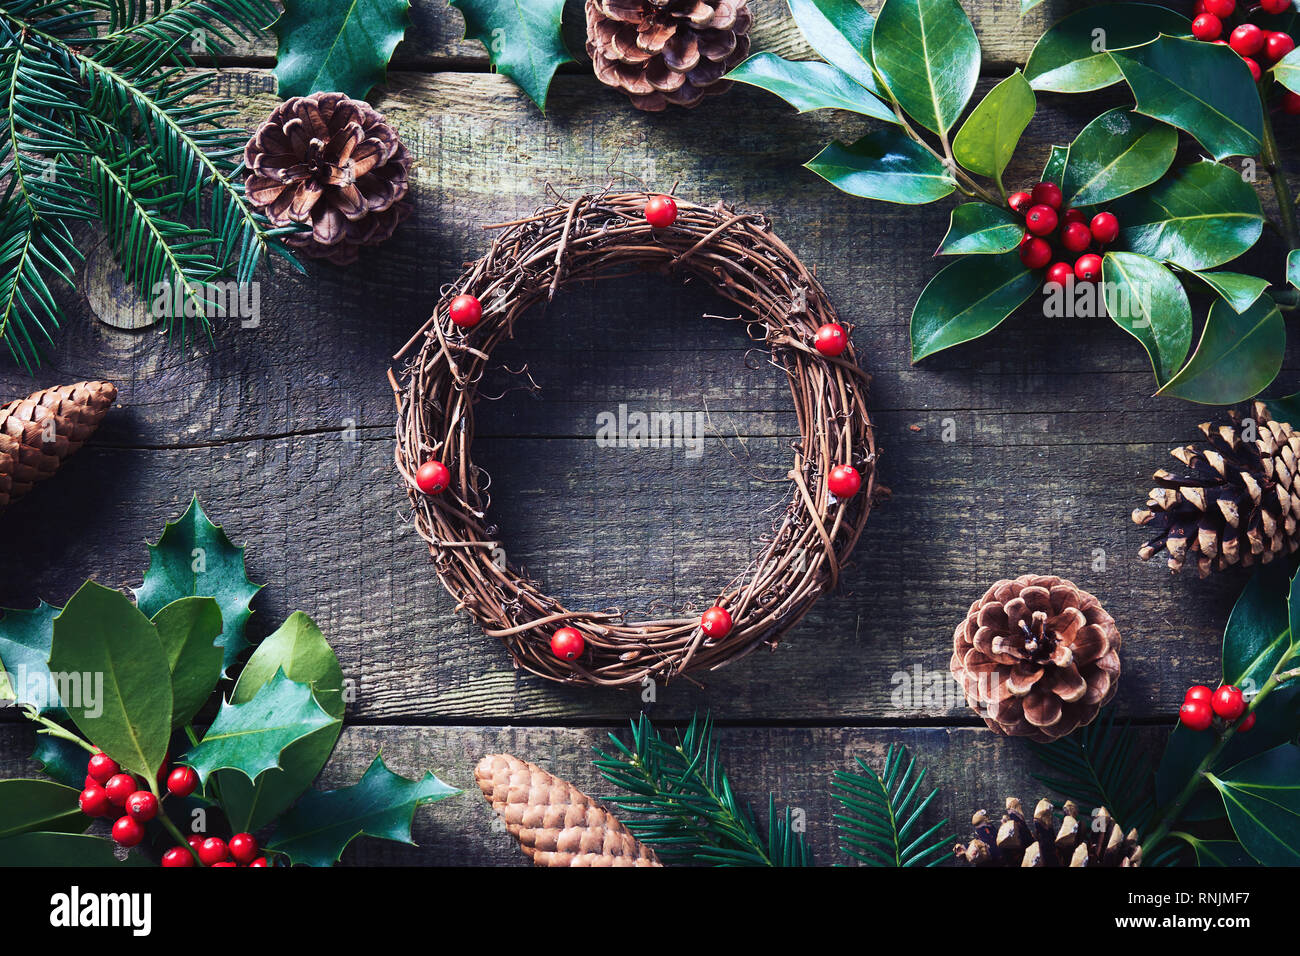 Machen Weihnachten Kranz mit frischen und natürlichen Materialien. Weihnachten Kranz mit roten Beeren und Kegel auf Holztisch. Stockfoto